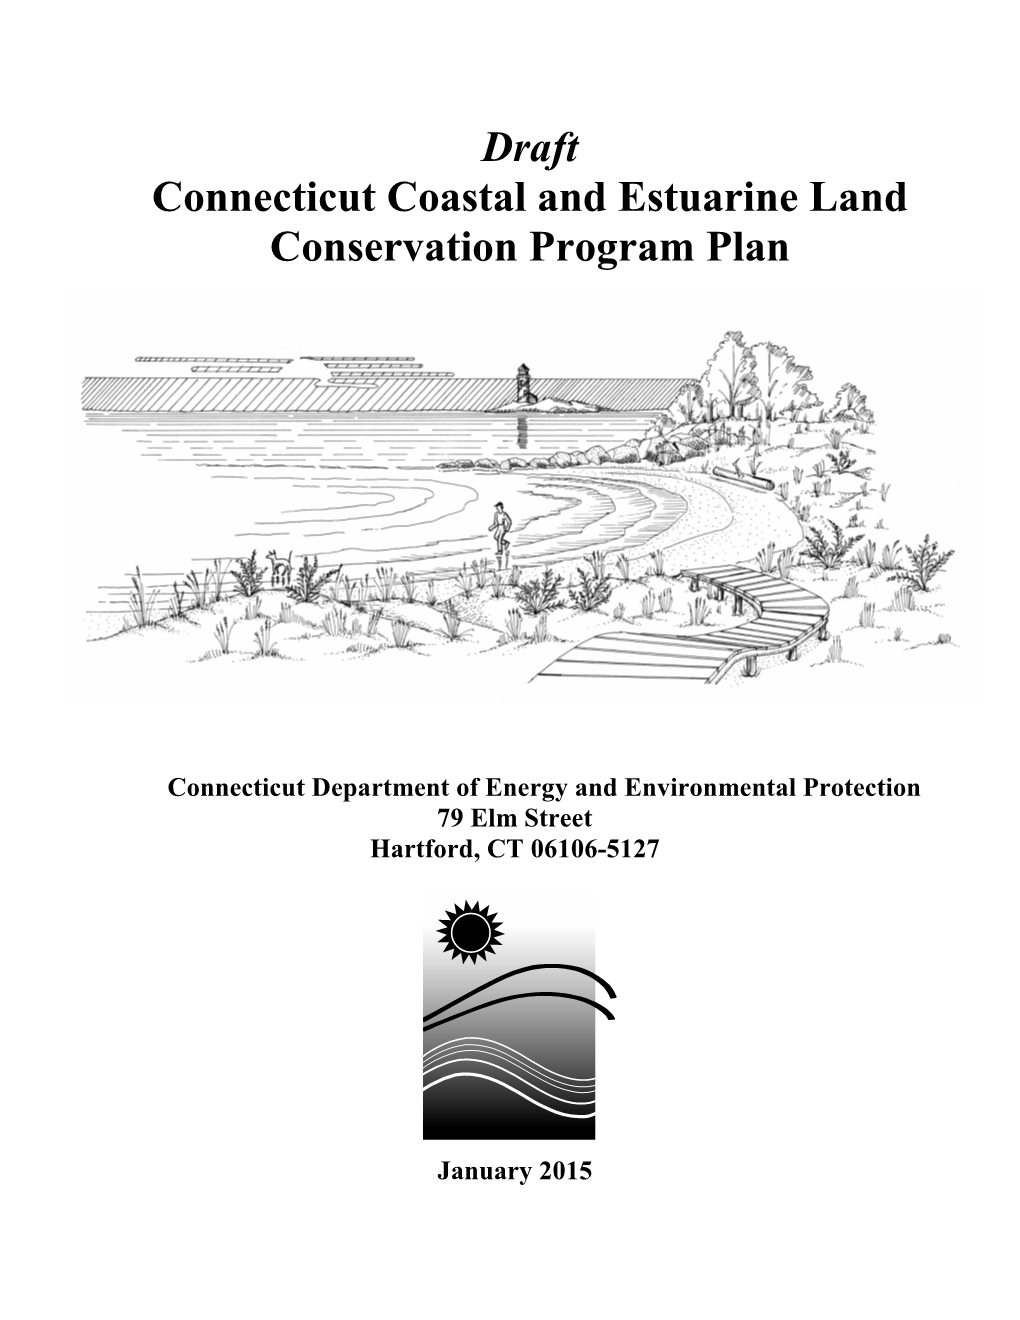 Connecticut Coastal and Estuarine Land Conservation Program Plan